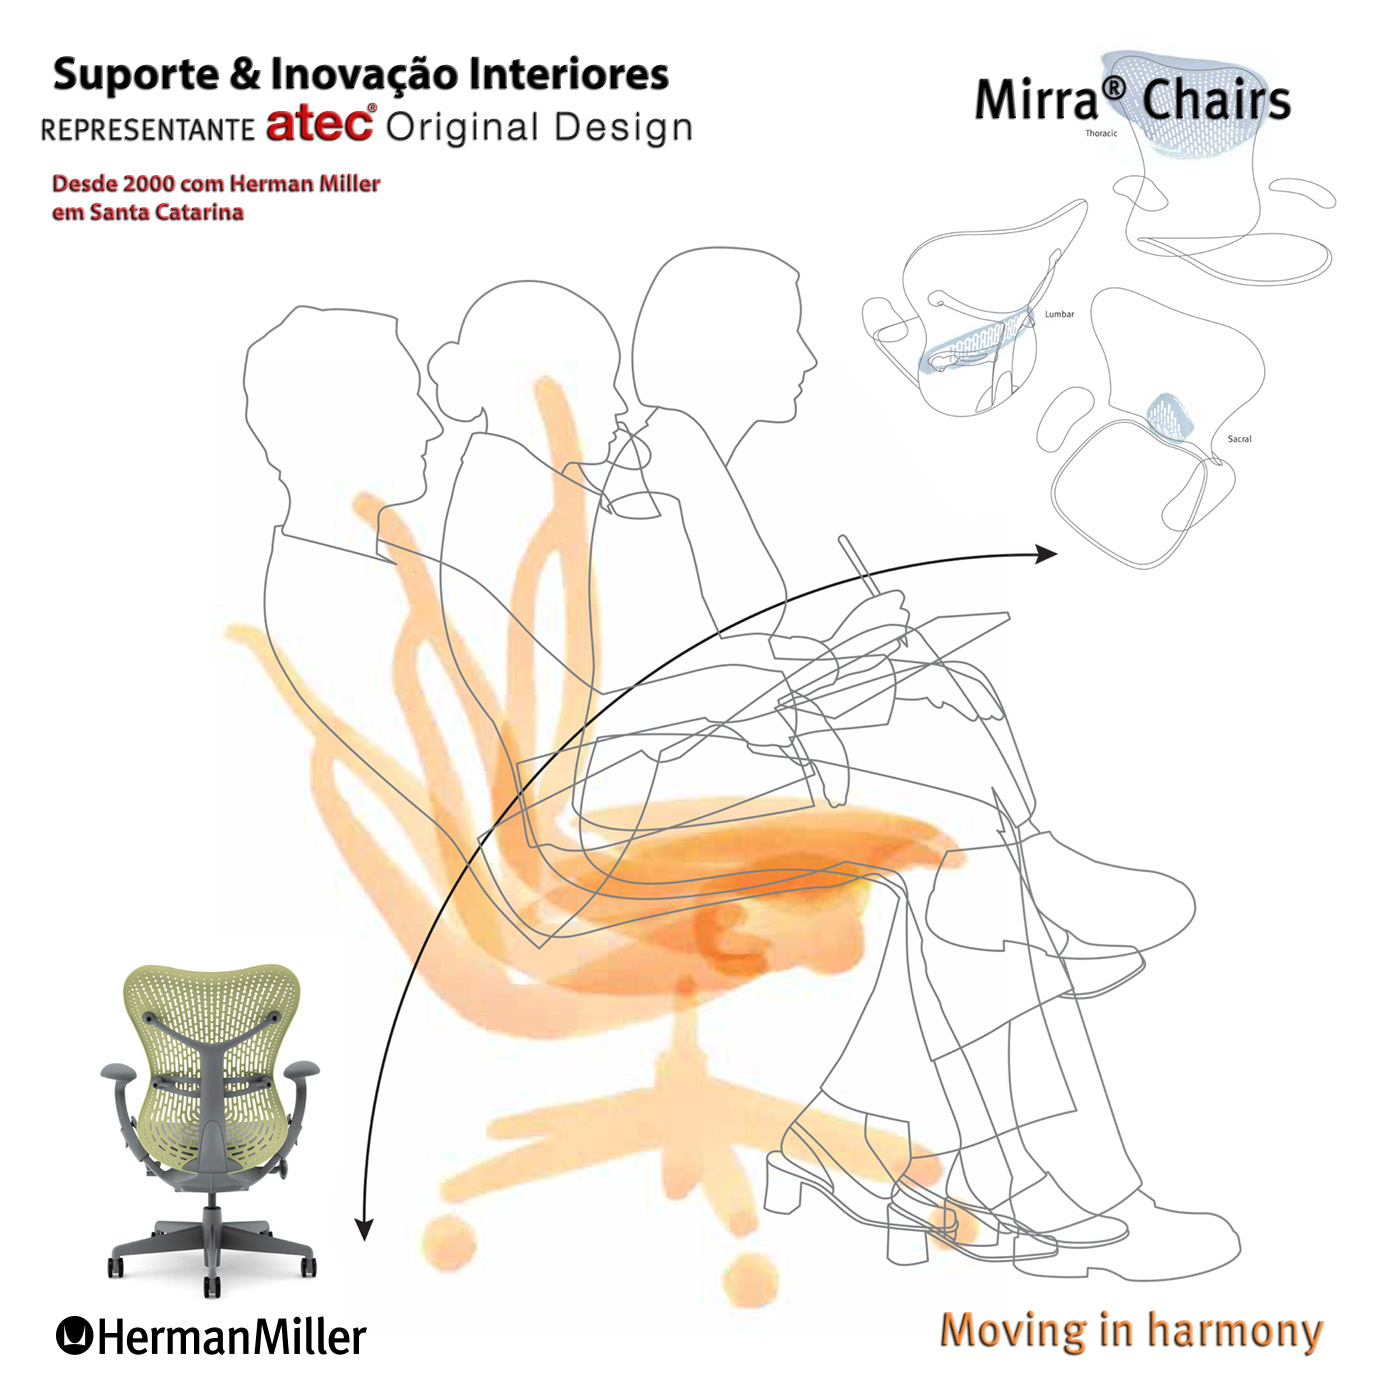 Mirra Chair by Herman Miller || Suporte & Inovação Interiores, representante Atec Original Design - Maior Dealer Herman Miller da América Latina